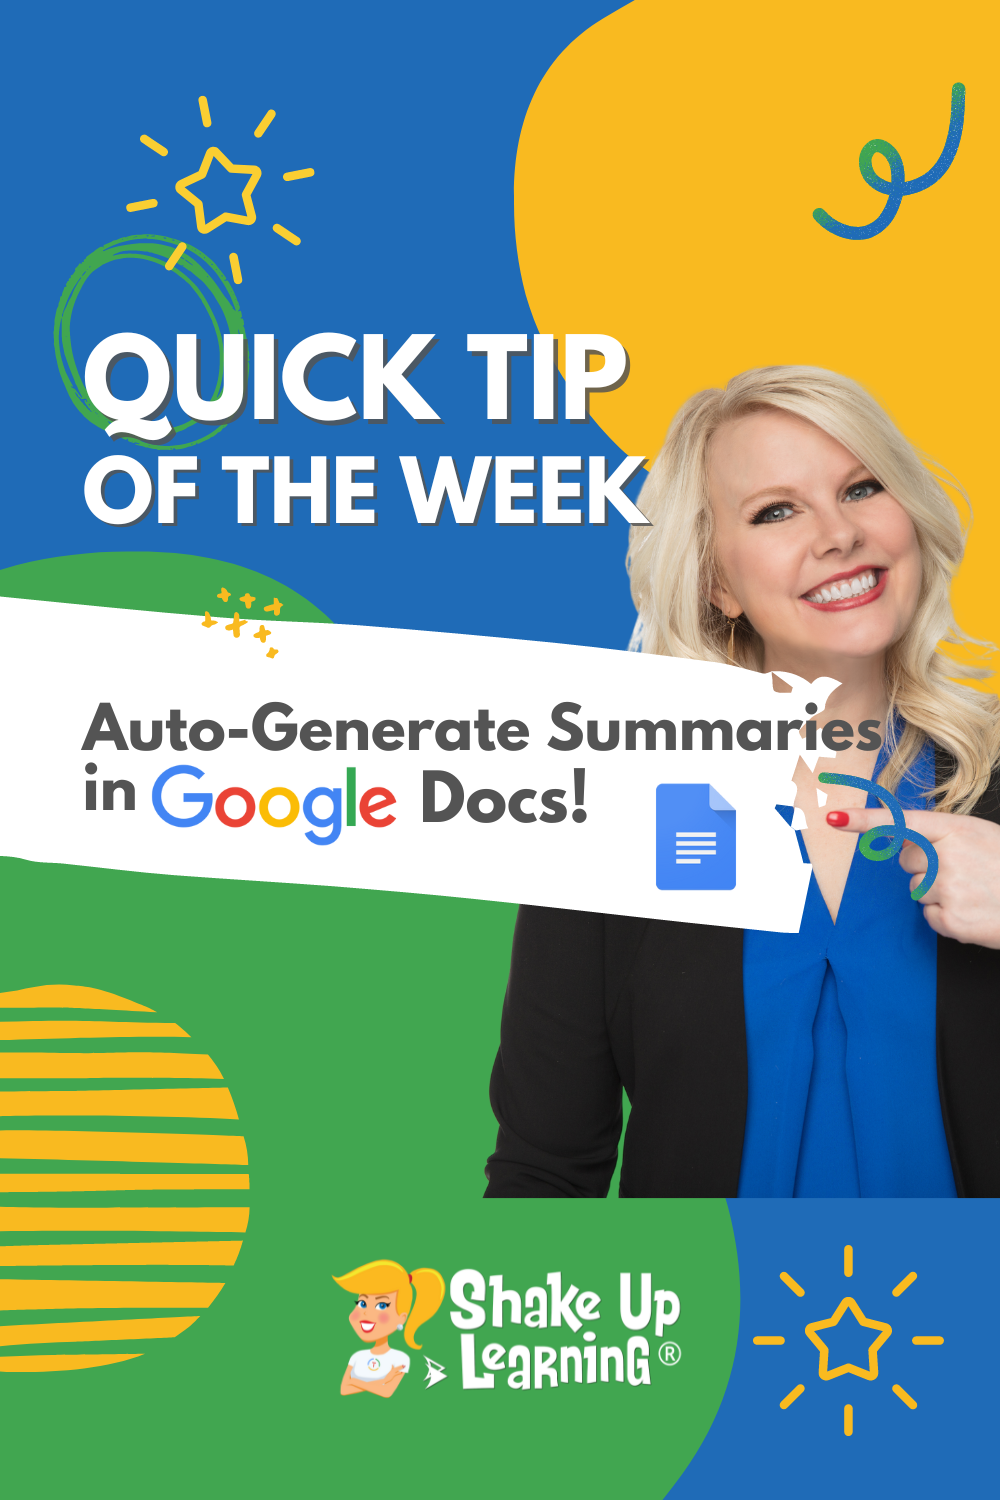 Auto-Generate Summaries in Google Docs